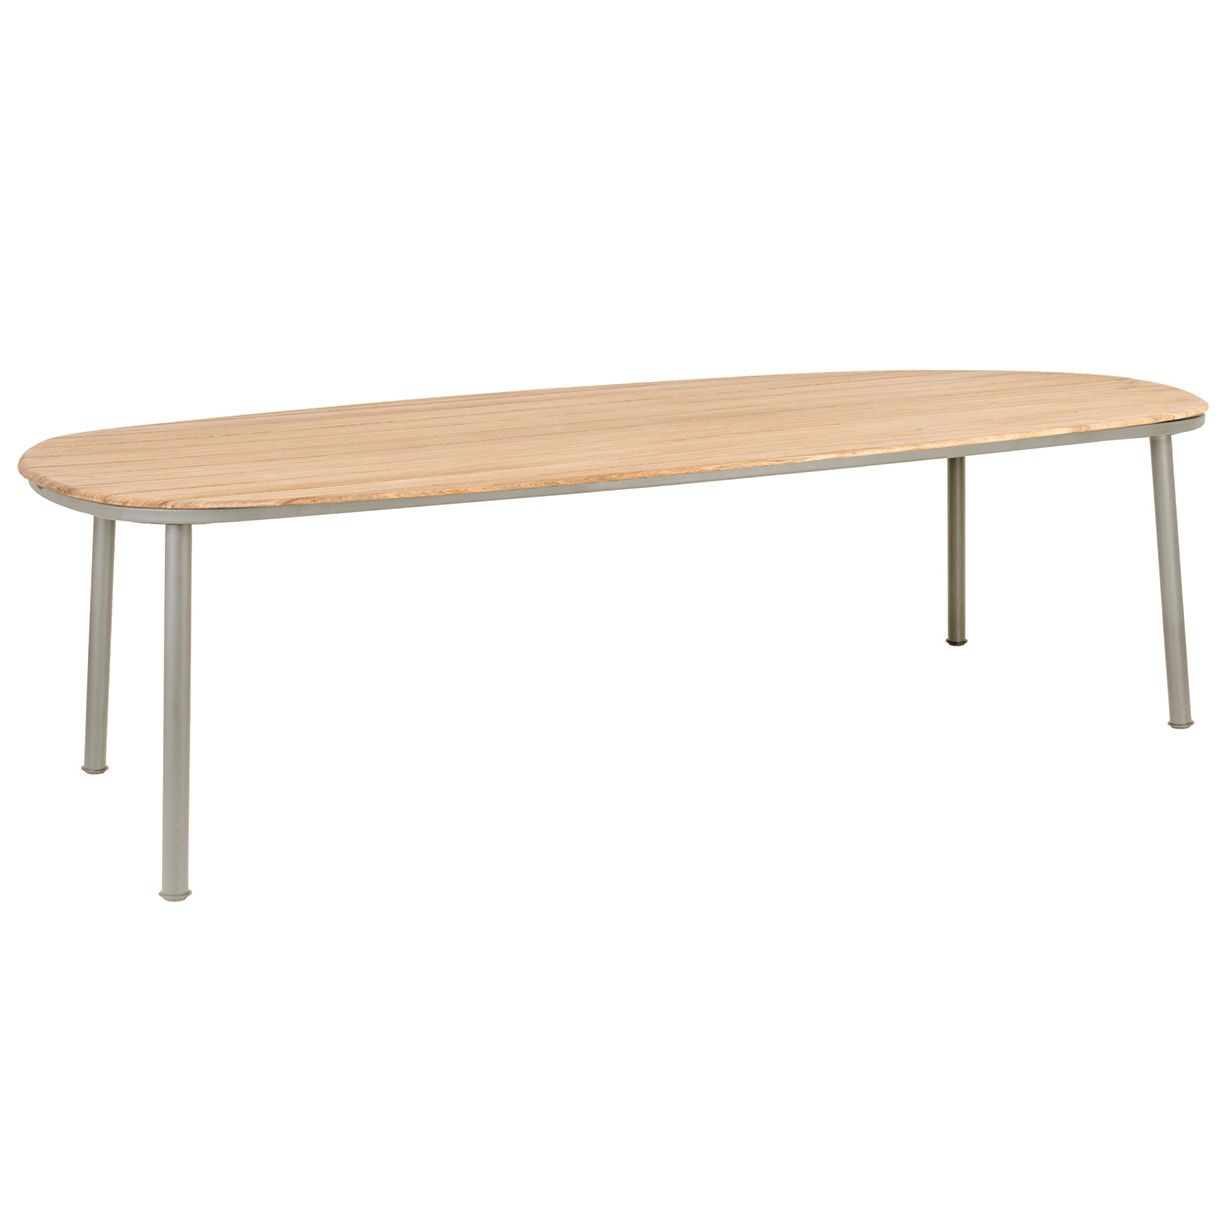 Grande table de jardin 270 x 120 cm alu gris ou beige et bois de roble, Cordial